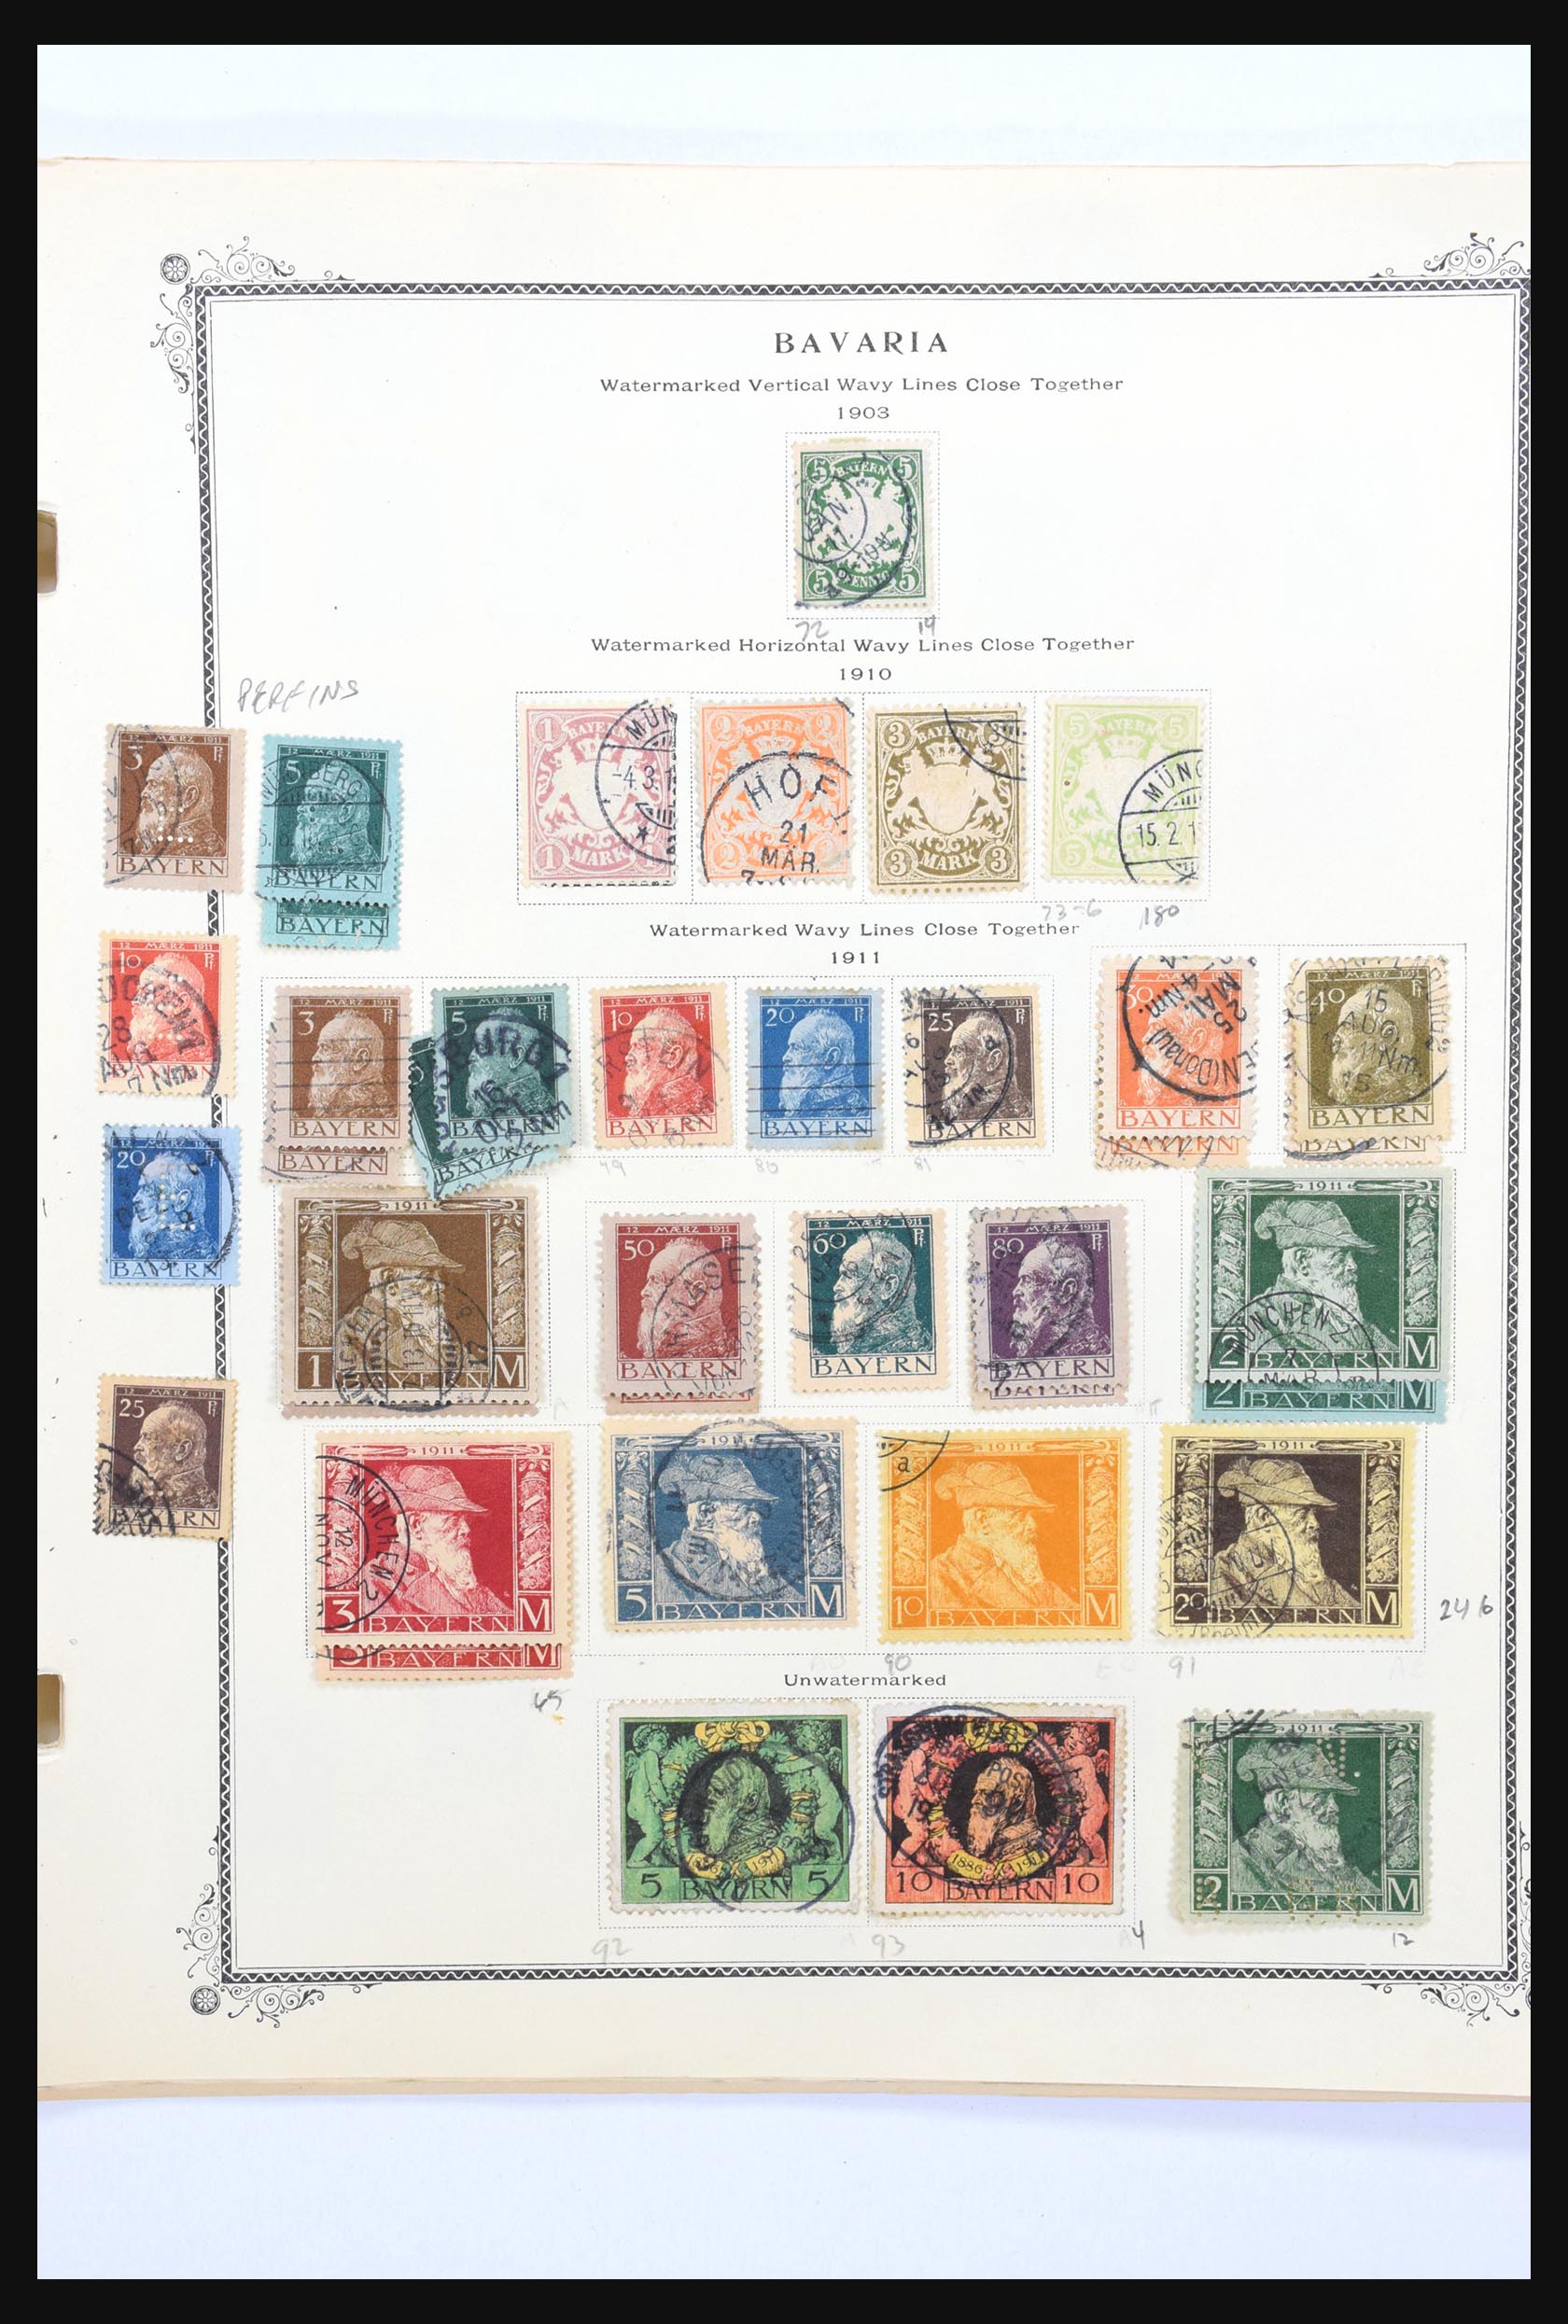 31300 006 - 31300 Duitsland superverzameling 1849-1990.